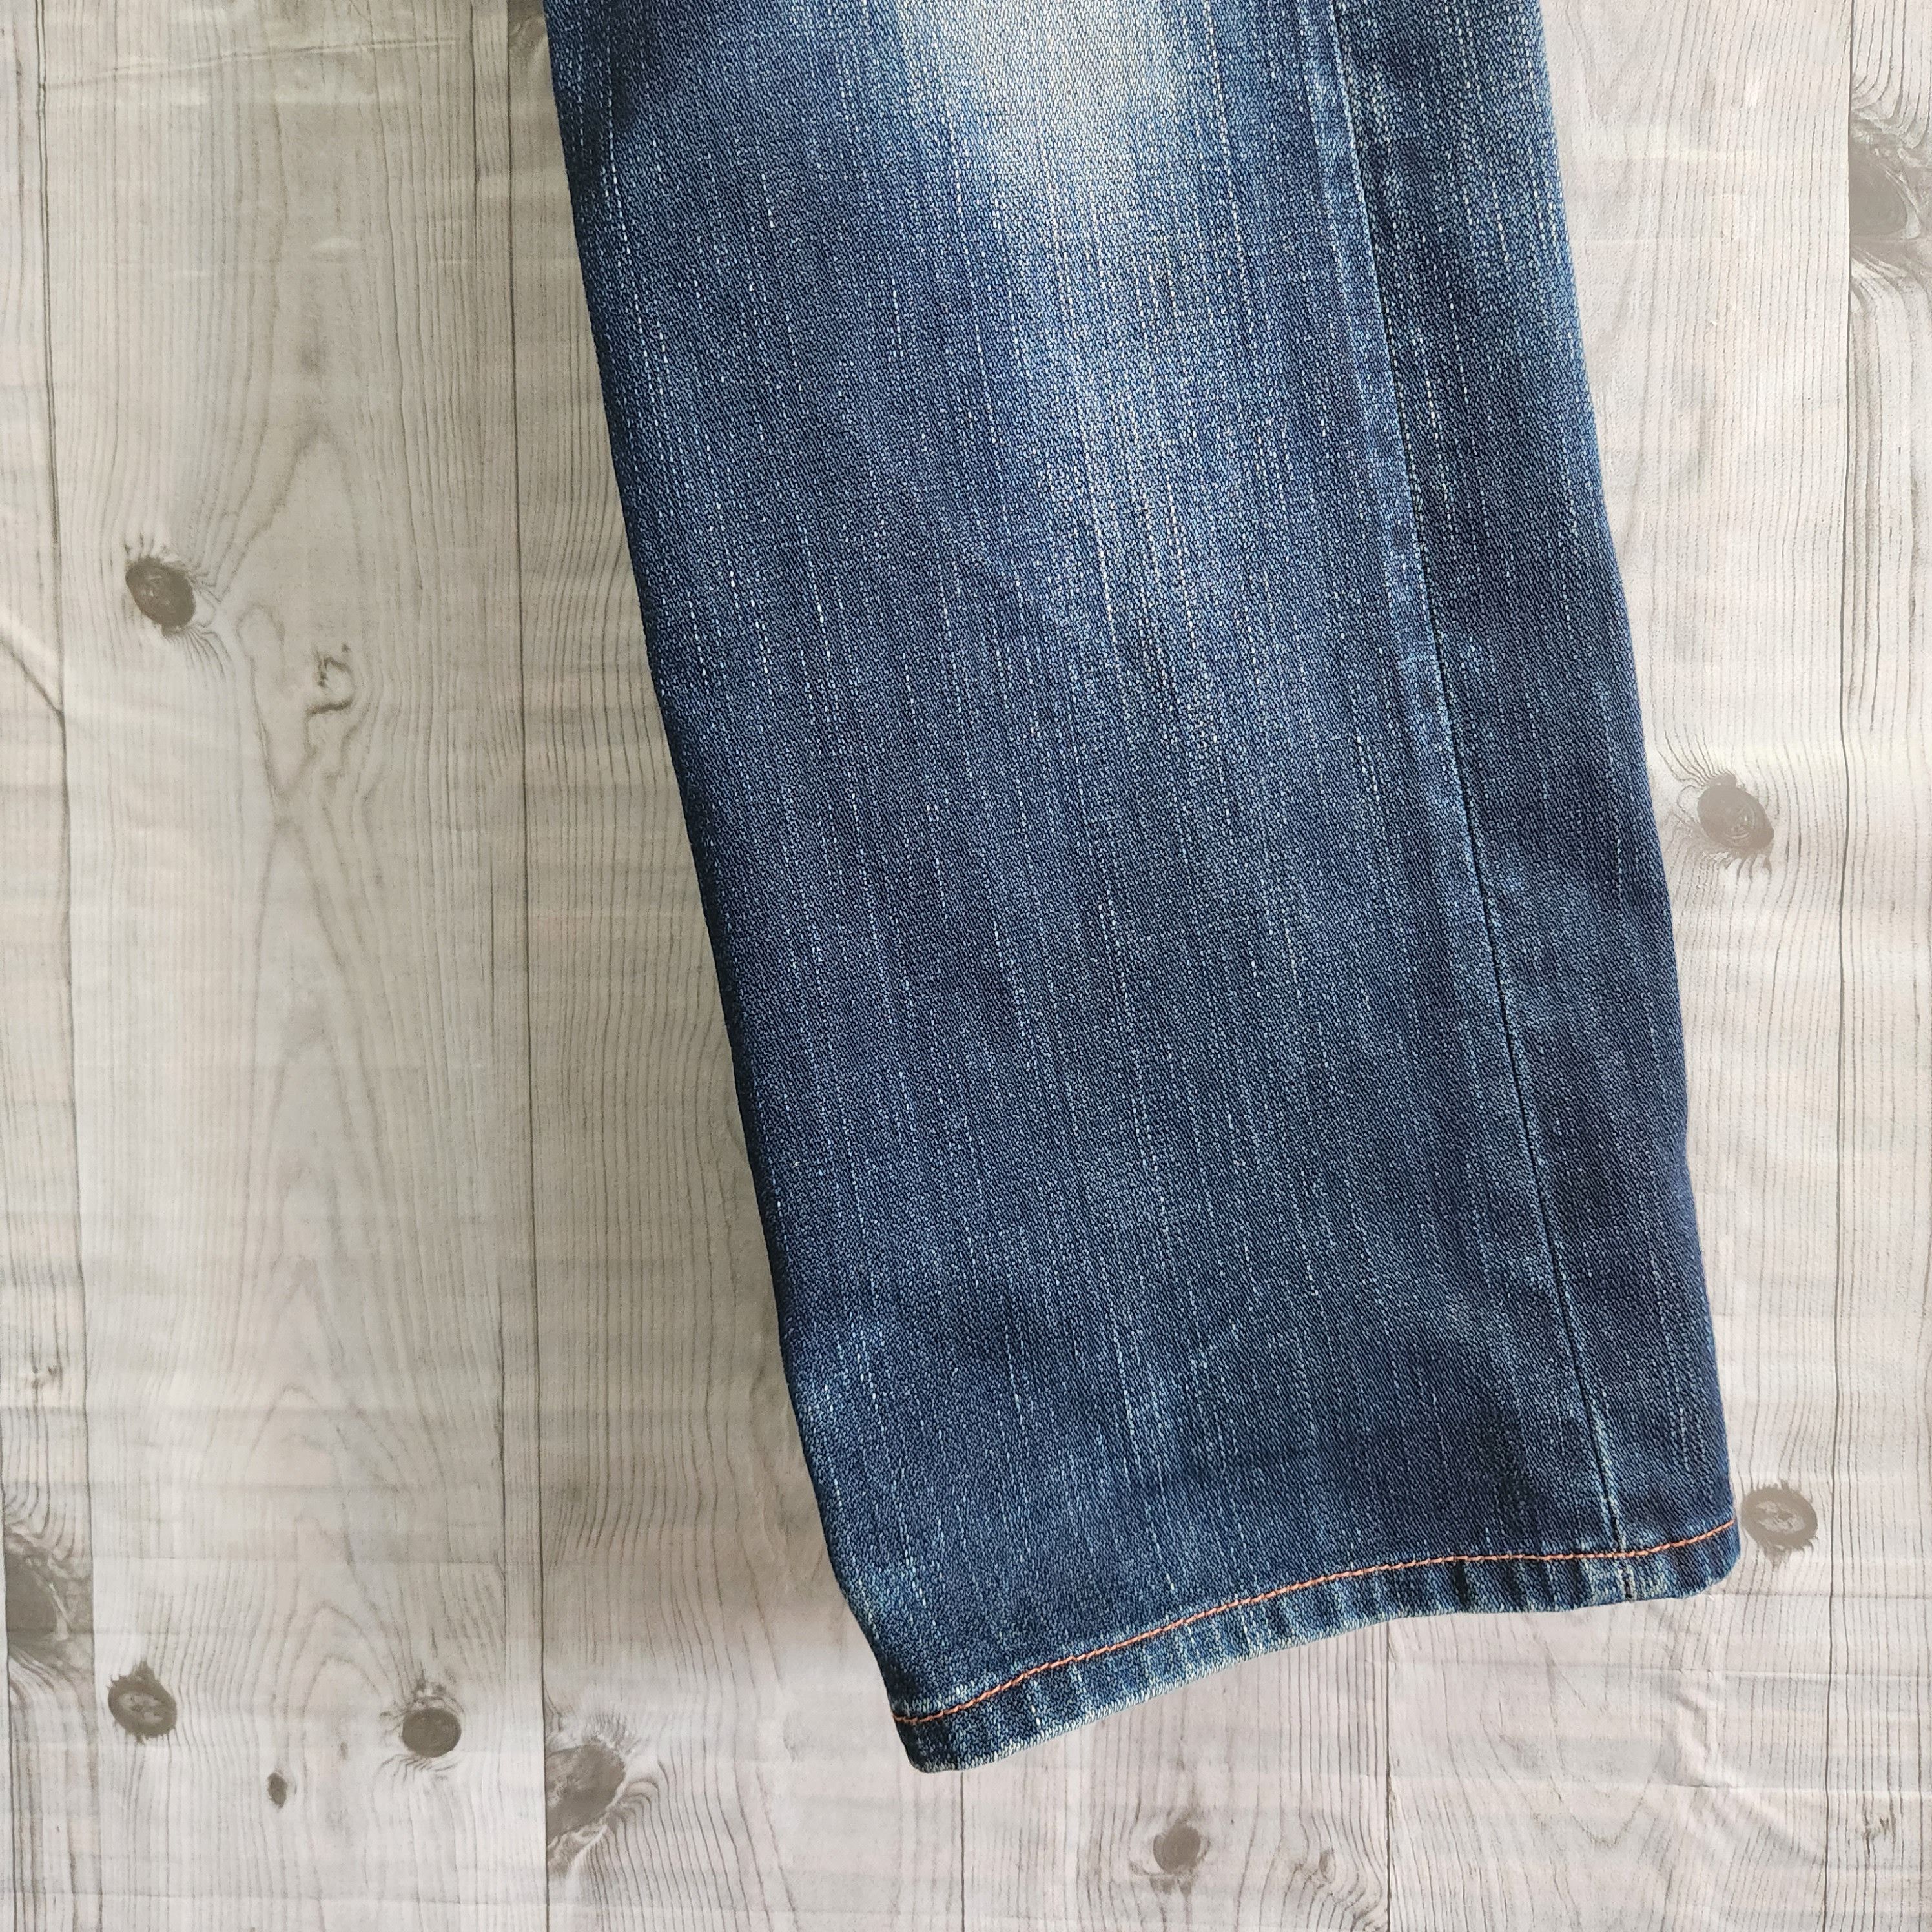 Levis 505 Premium Distressed Denim Jeans - 14